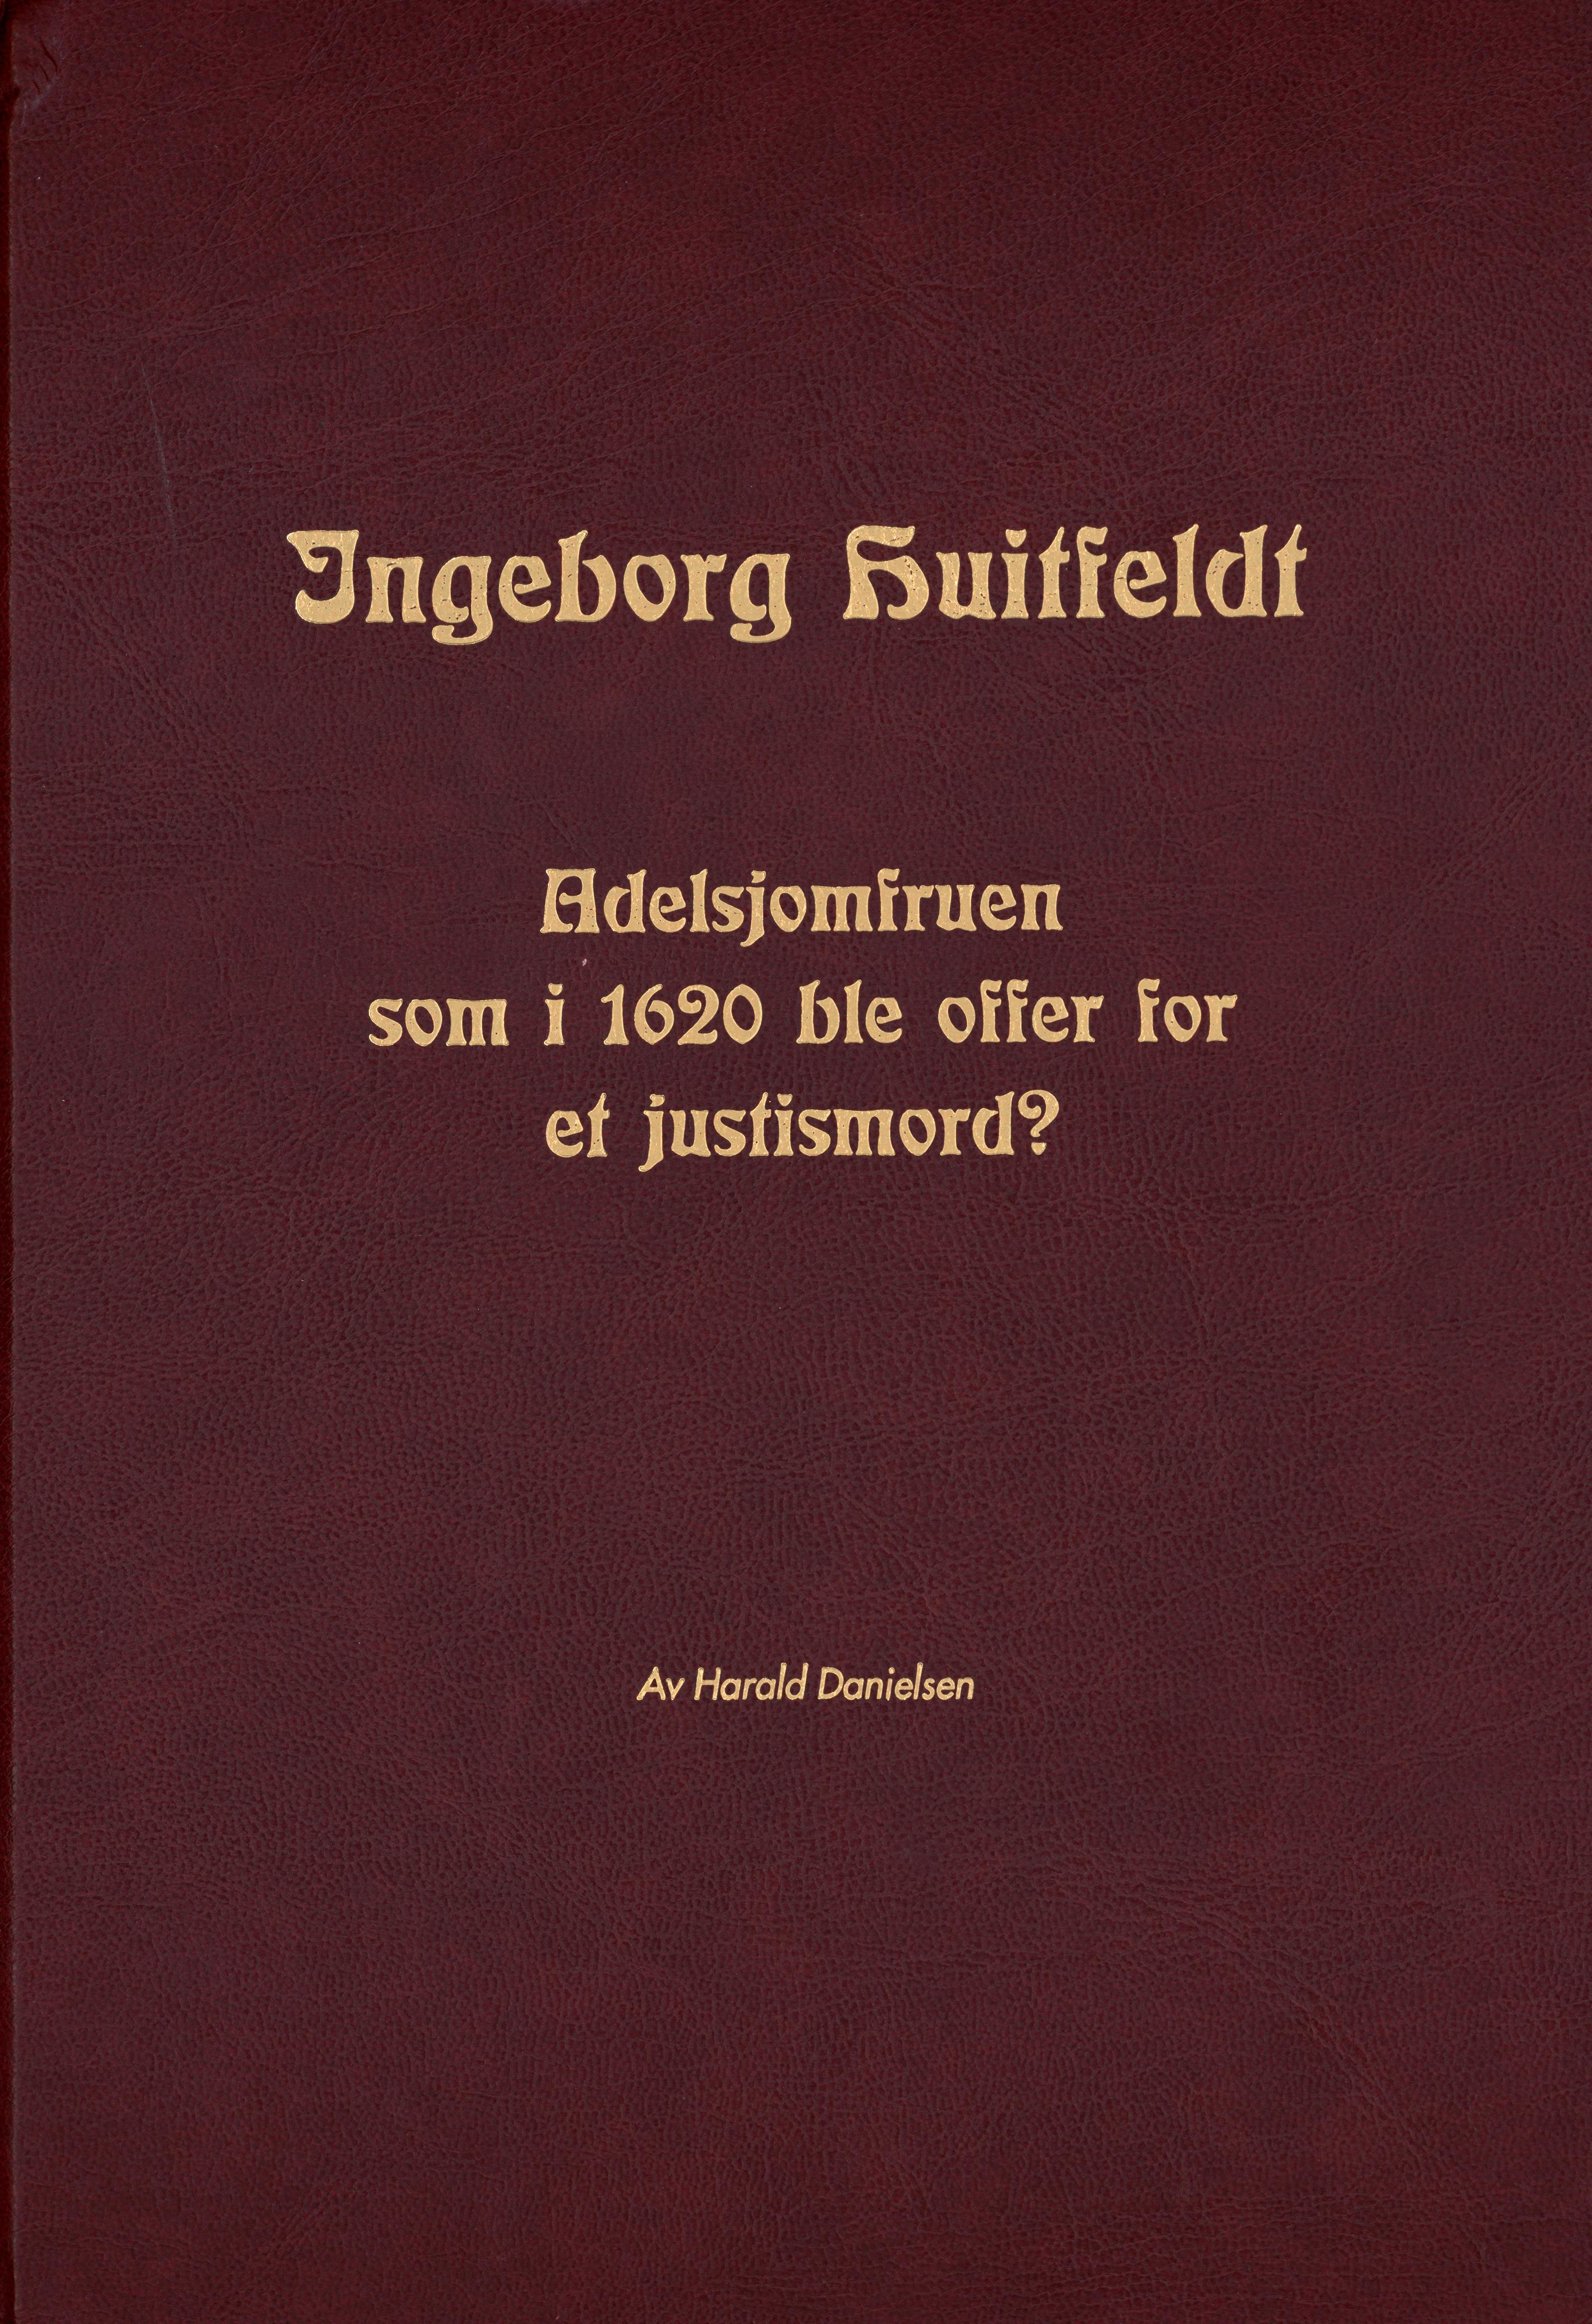 Ingeborg Huitfeldt - adelsjomfruen som i 1620 ble offer for et justismord (Harald Danielsen, 1998).pdf